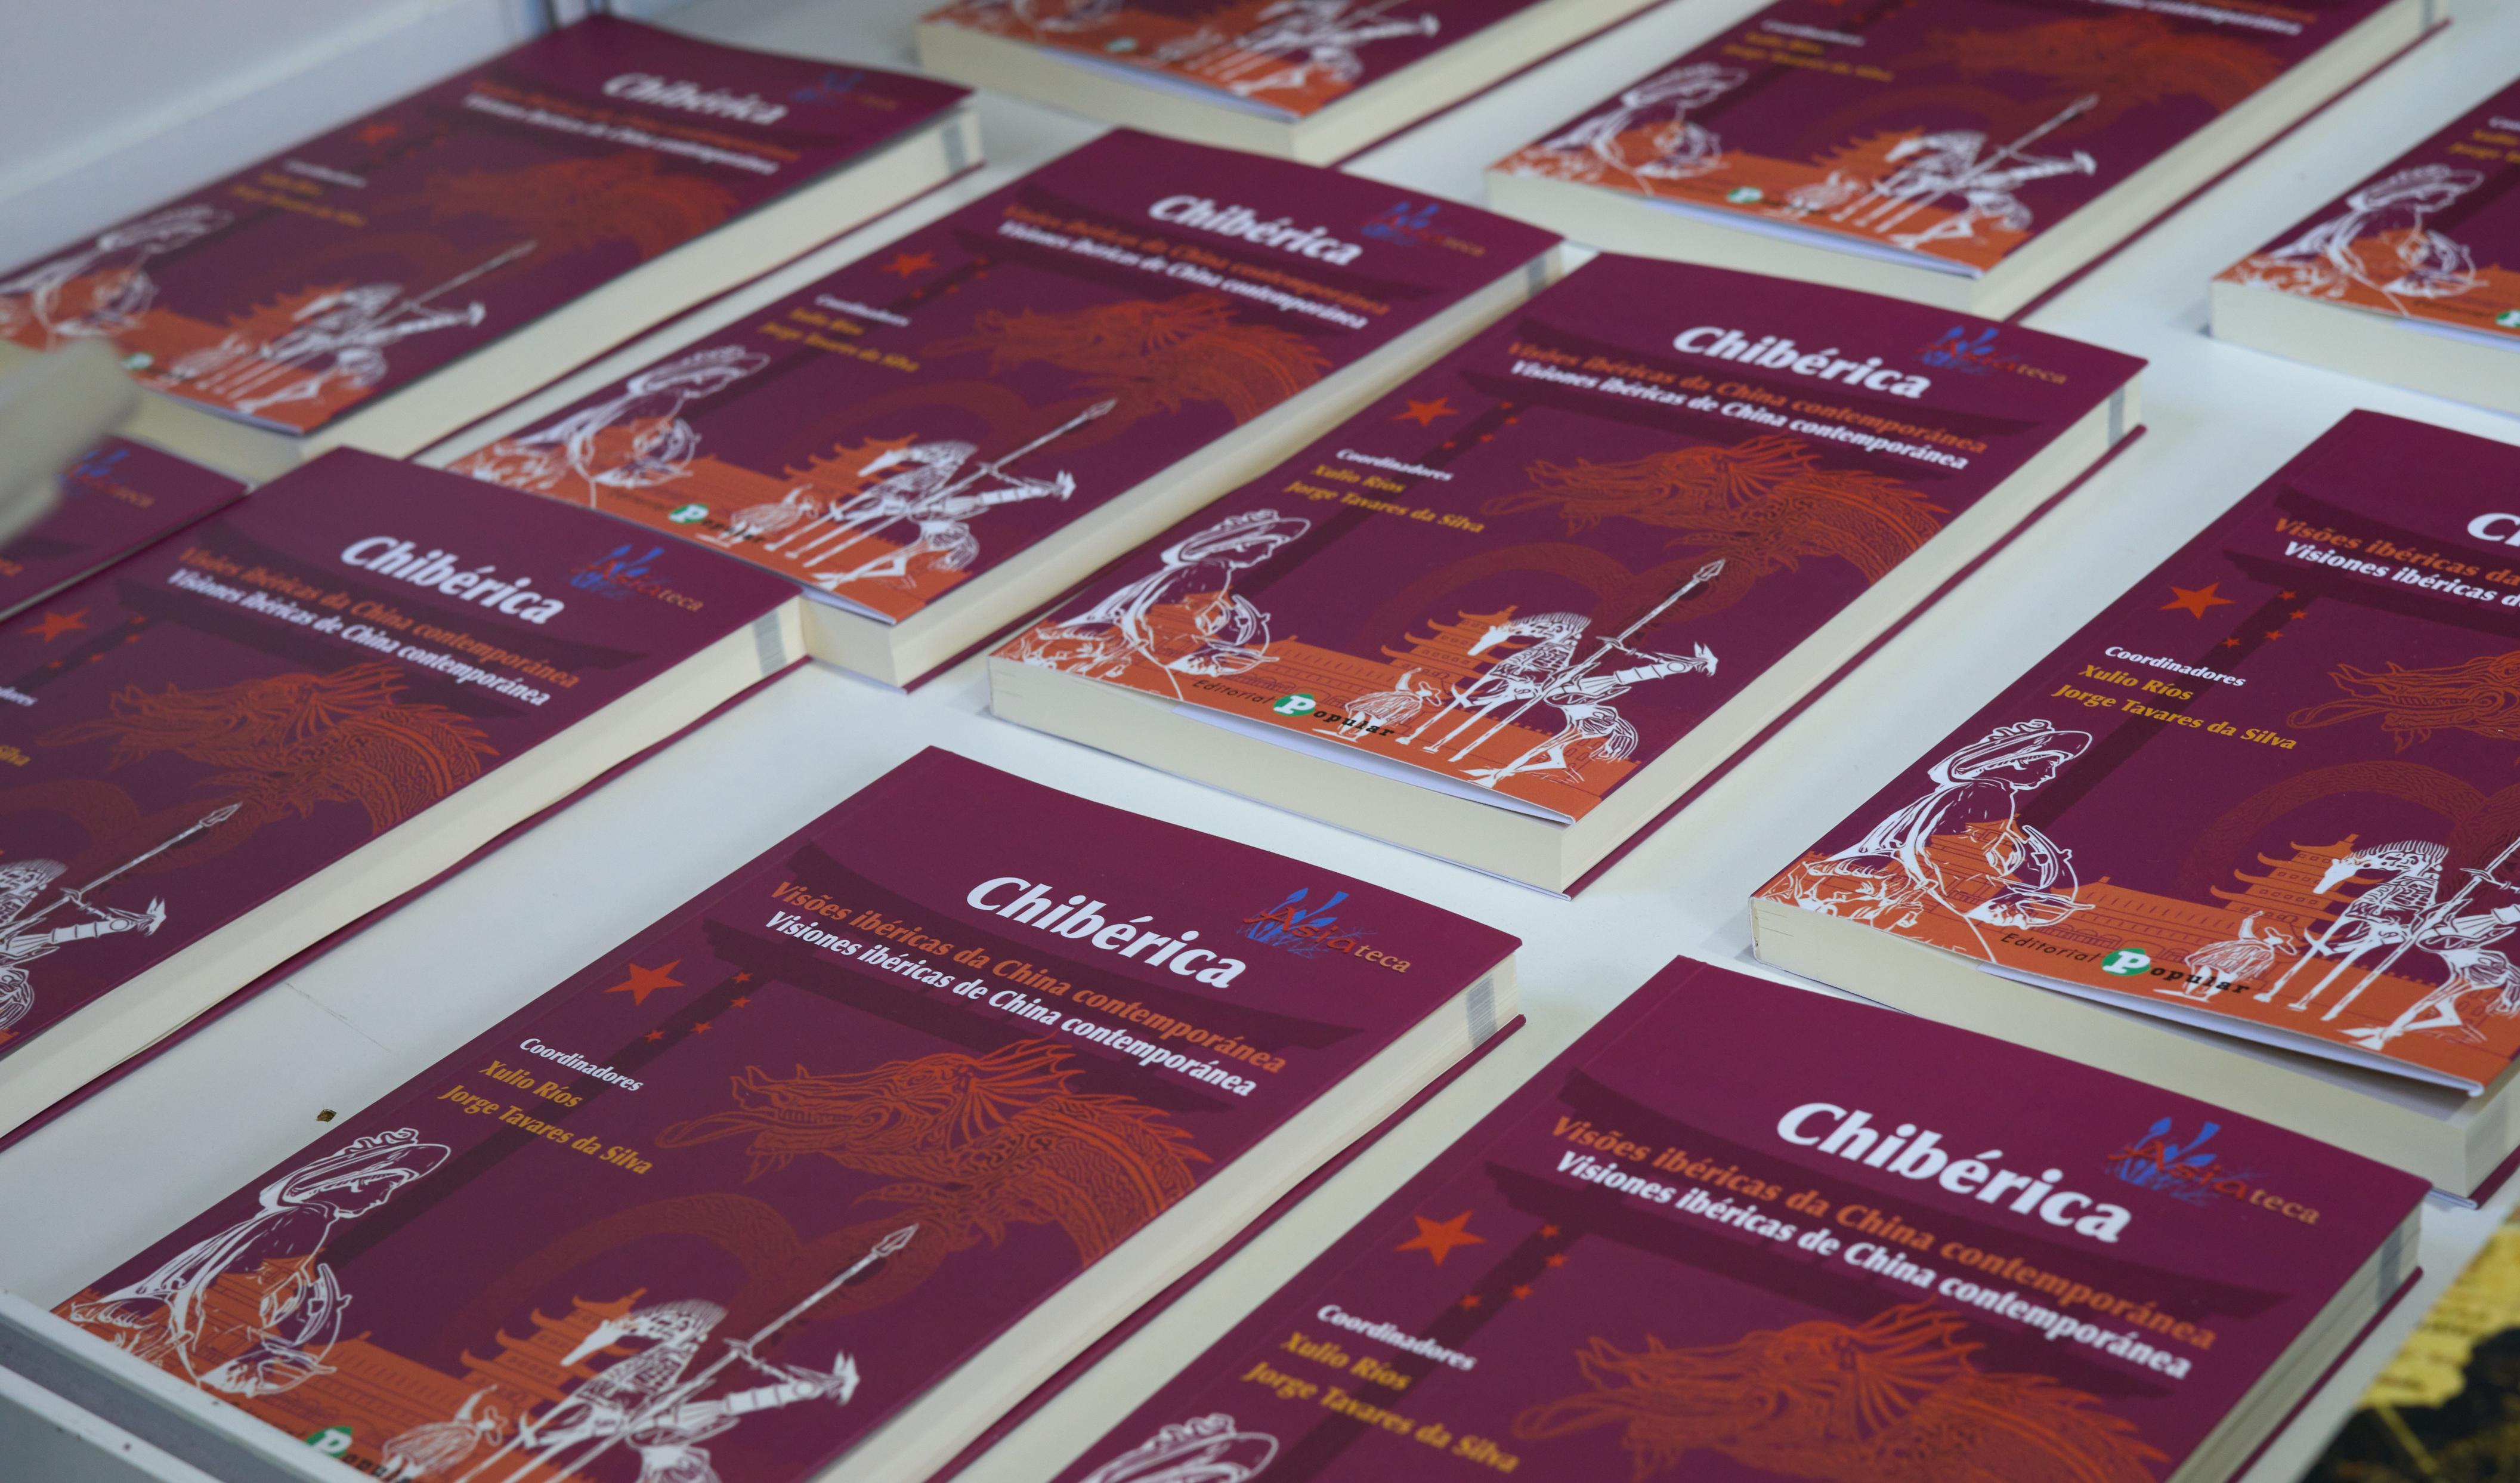 (国际·图文互动)西班牙出版多本介绍中国书籍